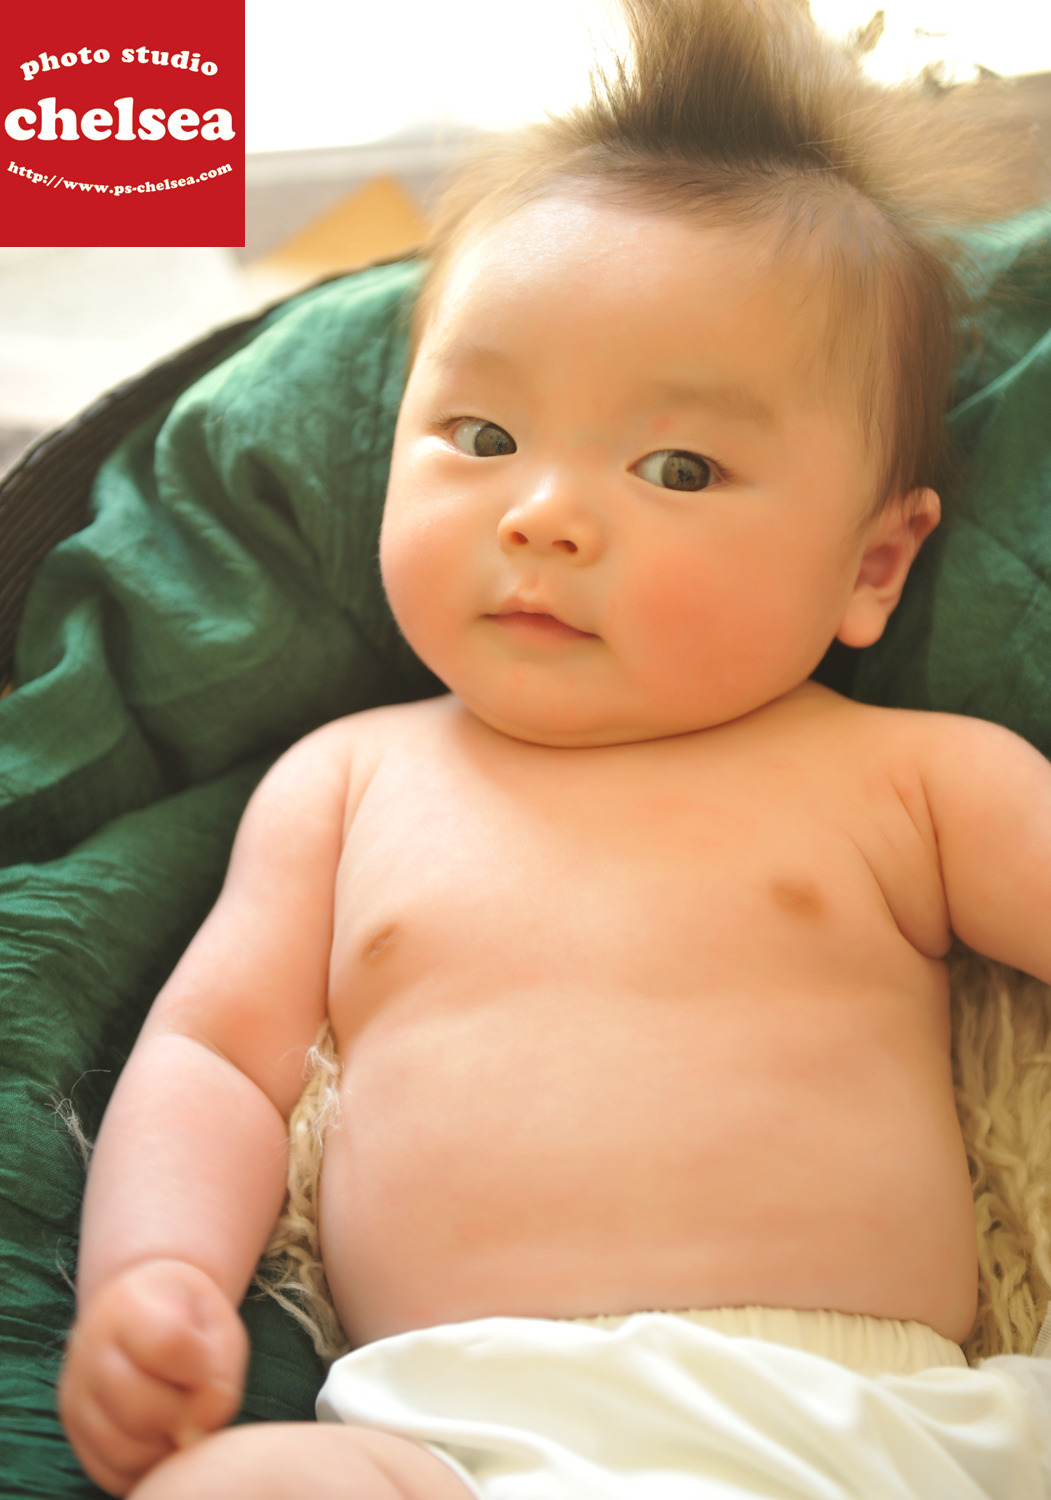 とってもかわいい赤ちゃんモデルさんです フォトスタジオチェルシー埼玉県入間市のおしゃれな写真館